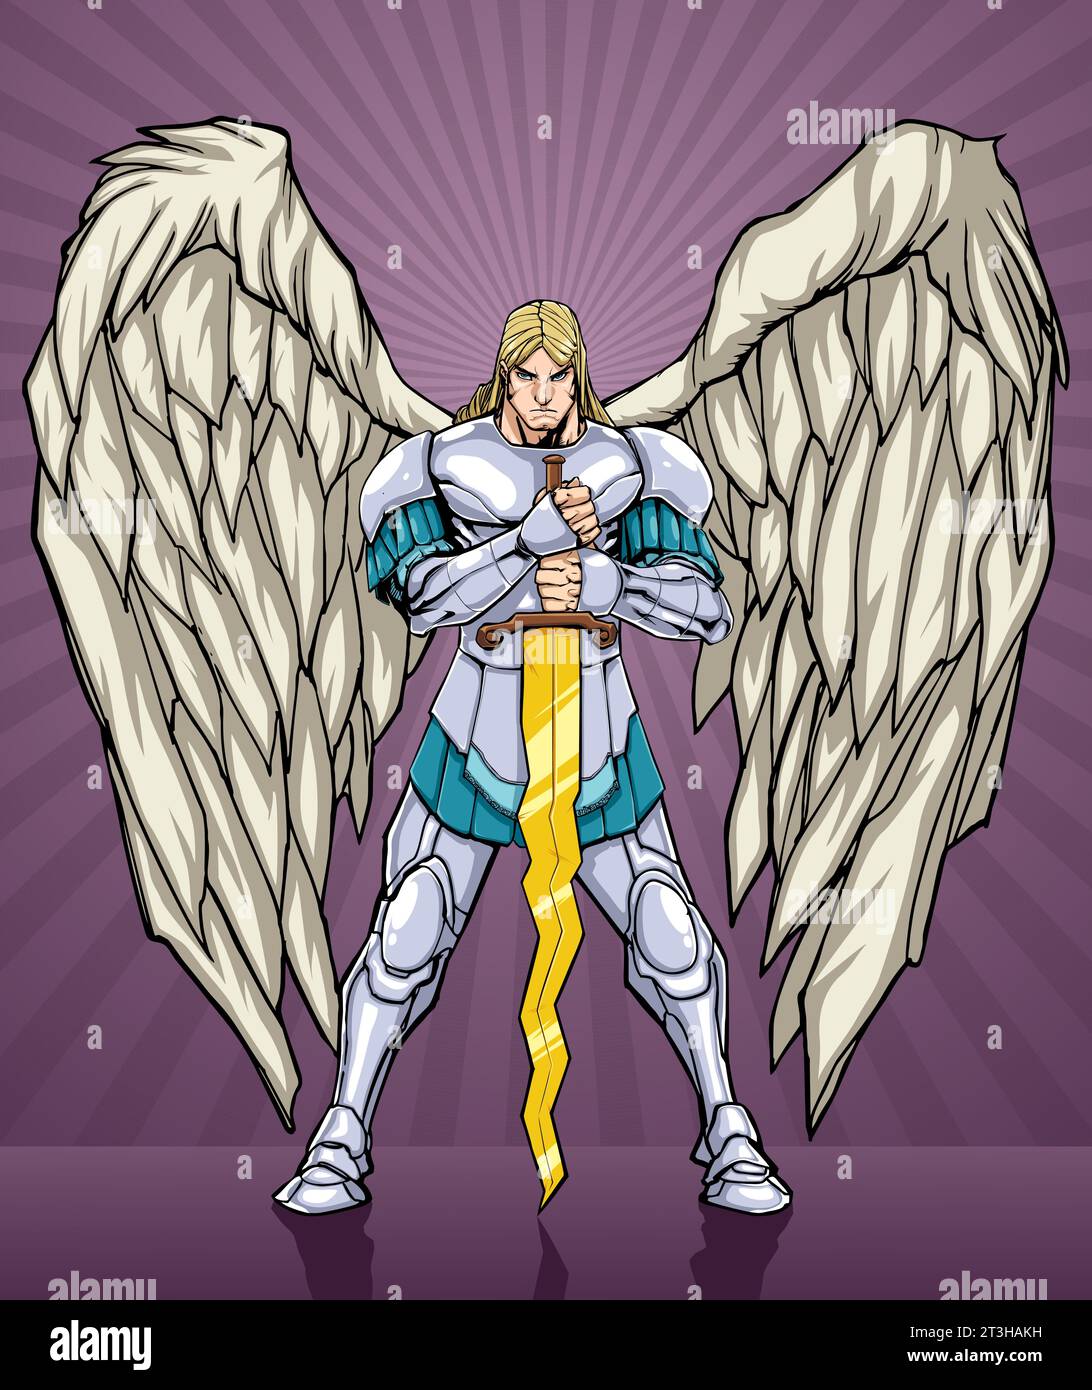 Représentation de style bande dessinée de l'Archange Michael en armure d'argent, avec des ailes expansives. Saisissant une épée, il se tient sur un fond violet radieux, symbolisant la force divine. Illustration de Vecteur